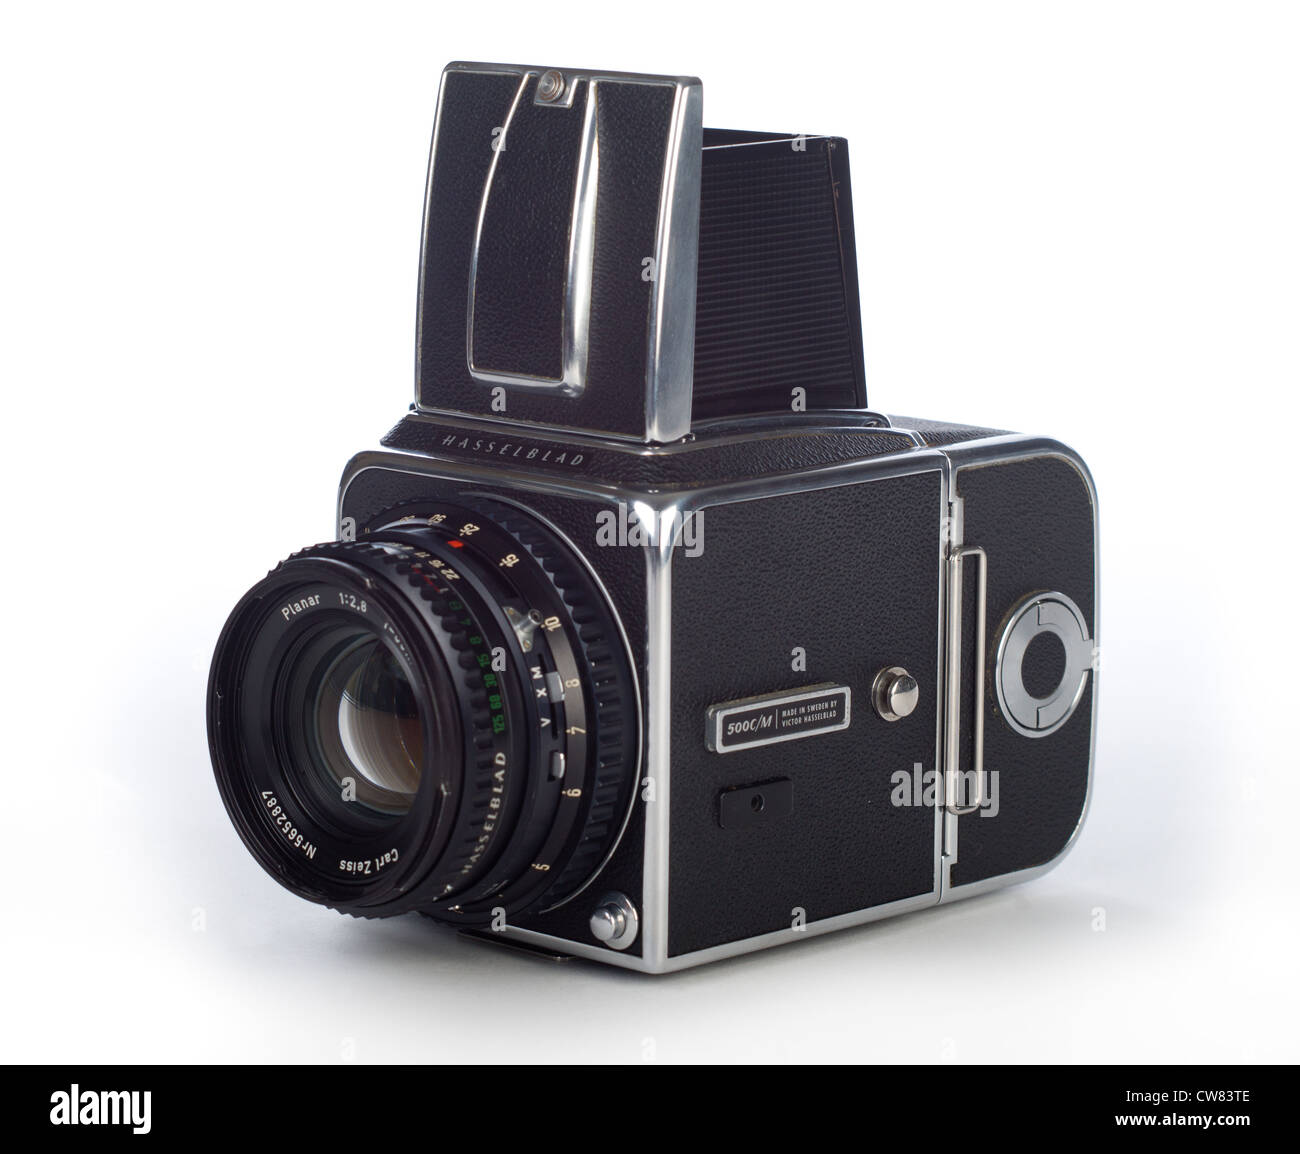 Hasselblad 500 C/M Appareil photo avec objectif Carl Zeiss Planar T 80mm objectif standard sur fond blanc Banque D'Images